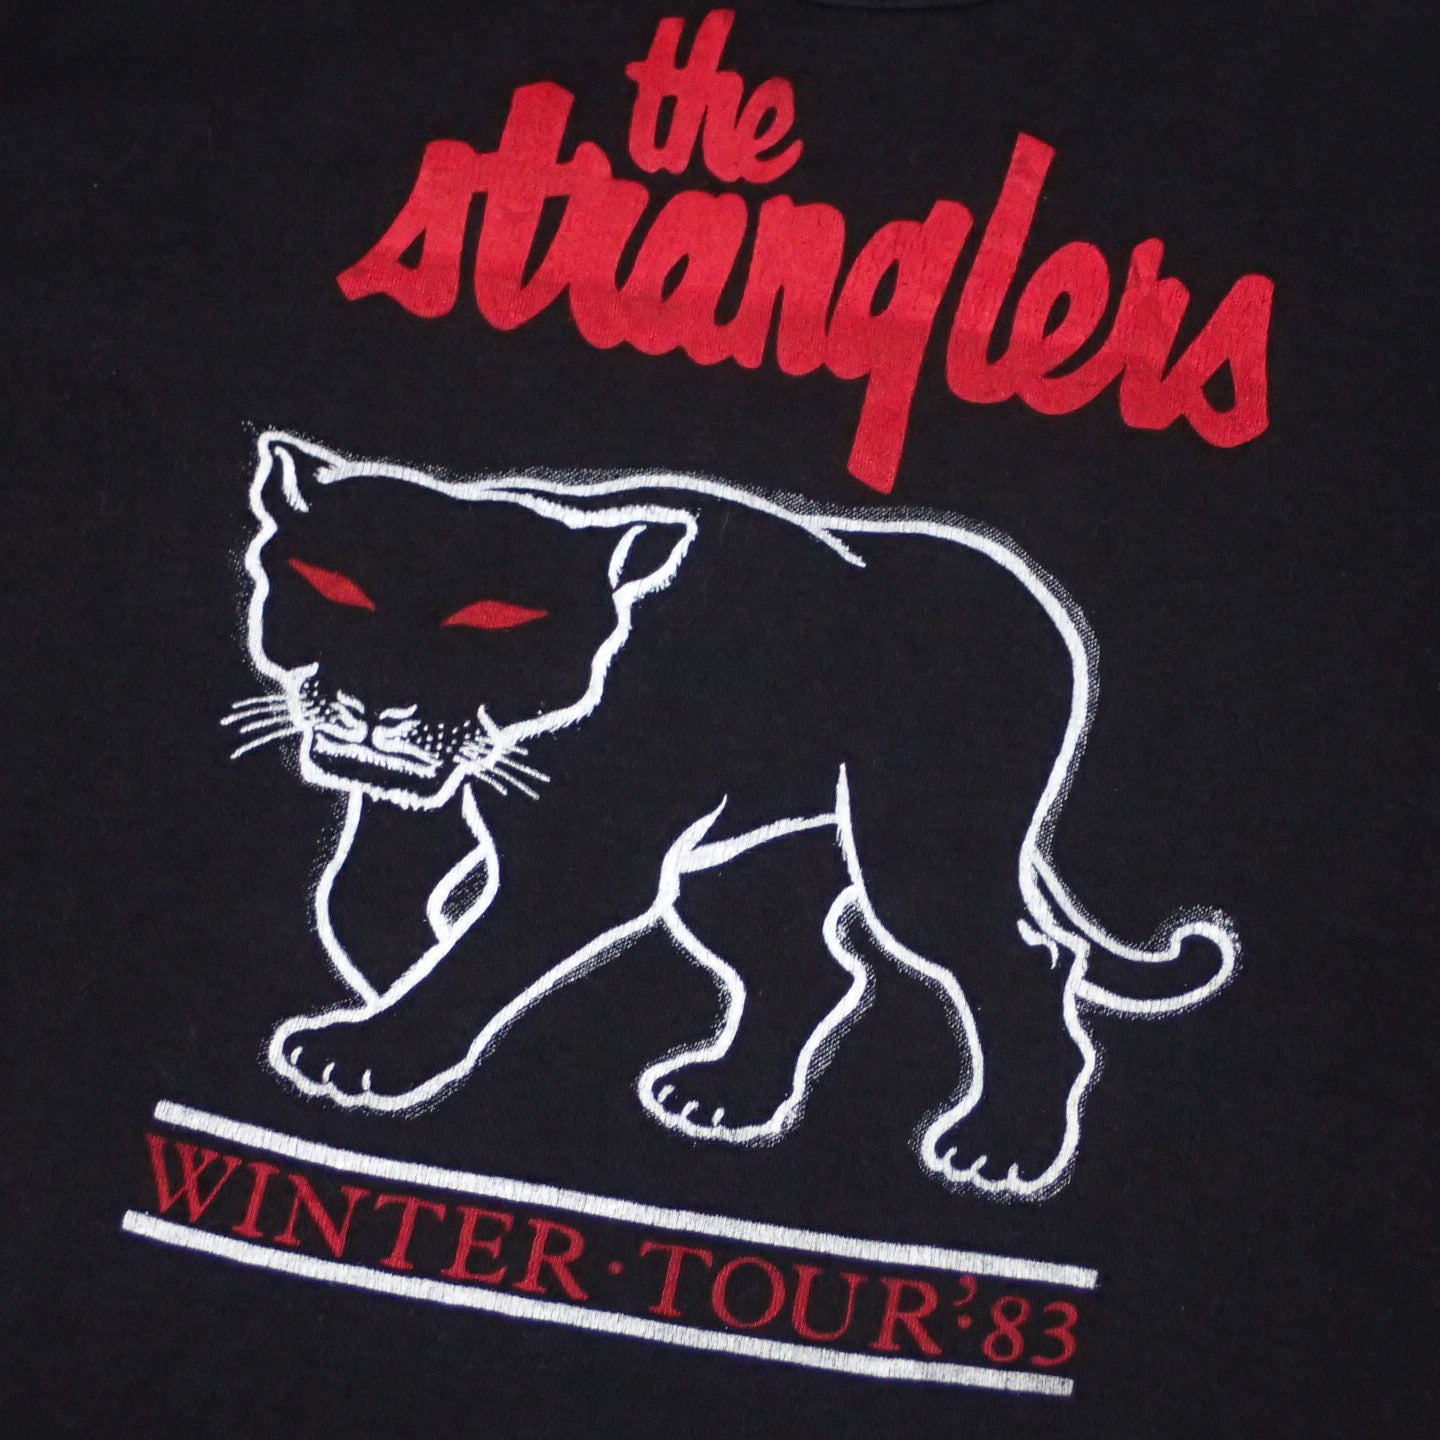 80s The Stranglers T-shirt "Feline Tee"